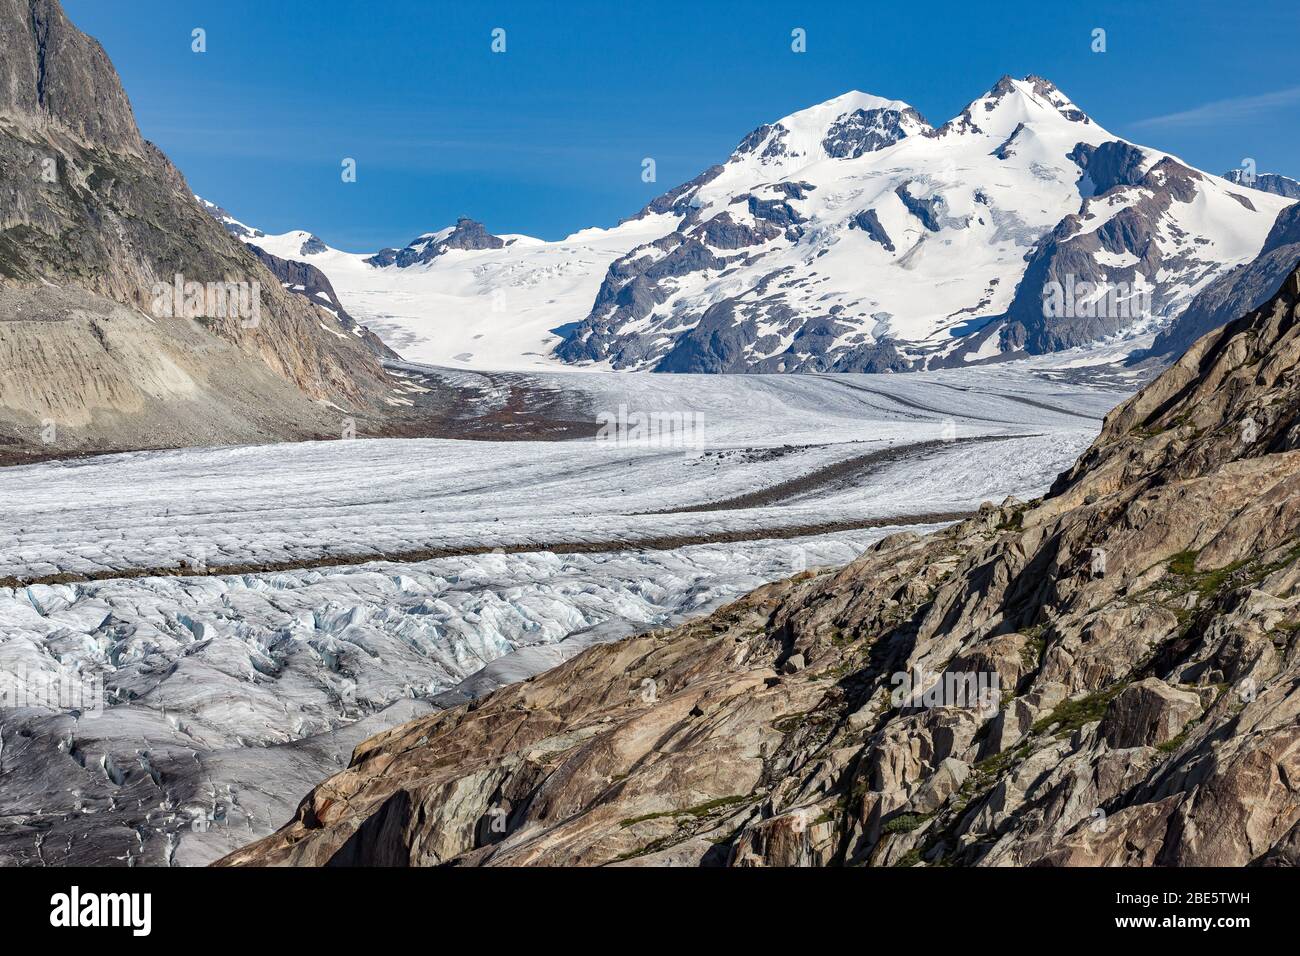 Il ghiacciaio Aletsch. Aletschgletscher. Rocce lisce. Mönch, Alpi Bernesi orientali nel cantone svizzero del Vallese. Svizzera. Foto Stock